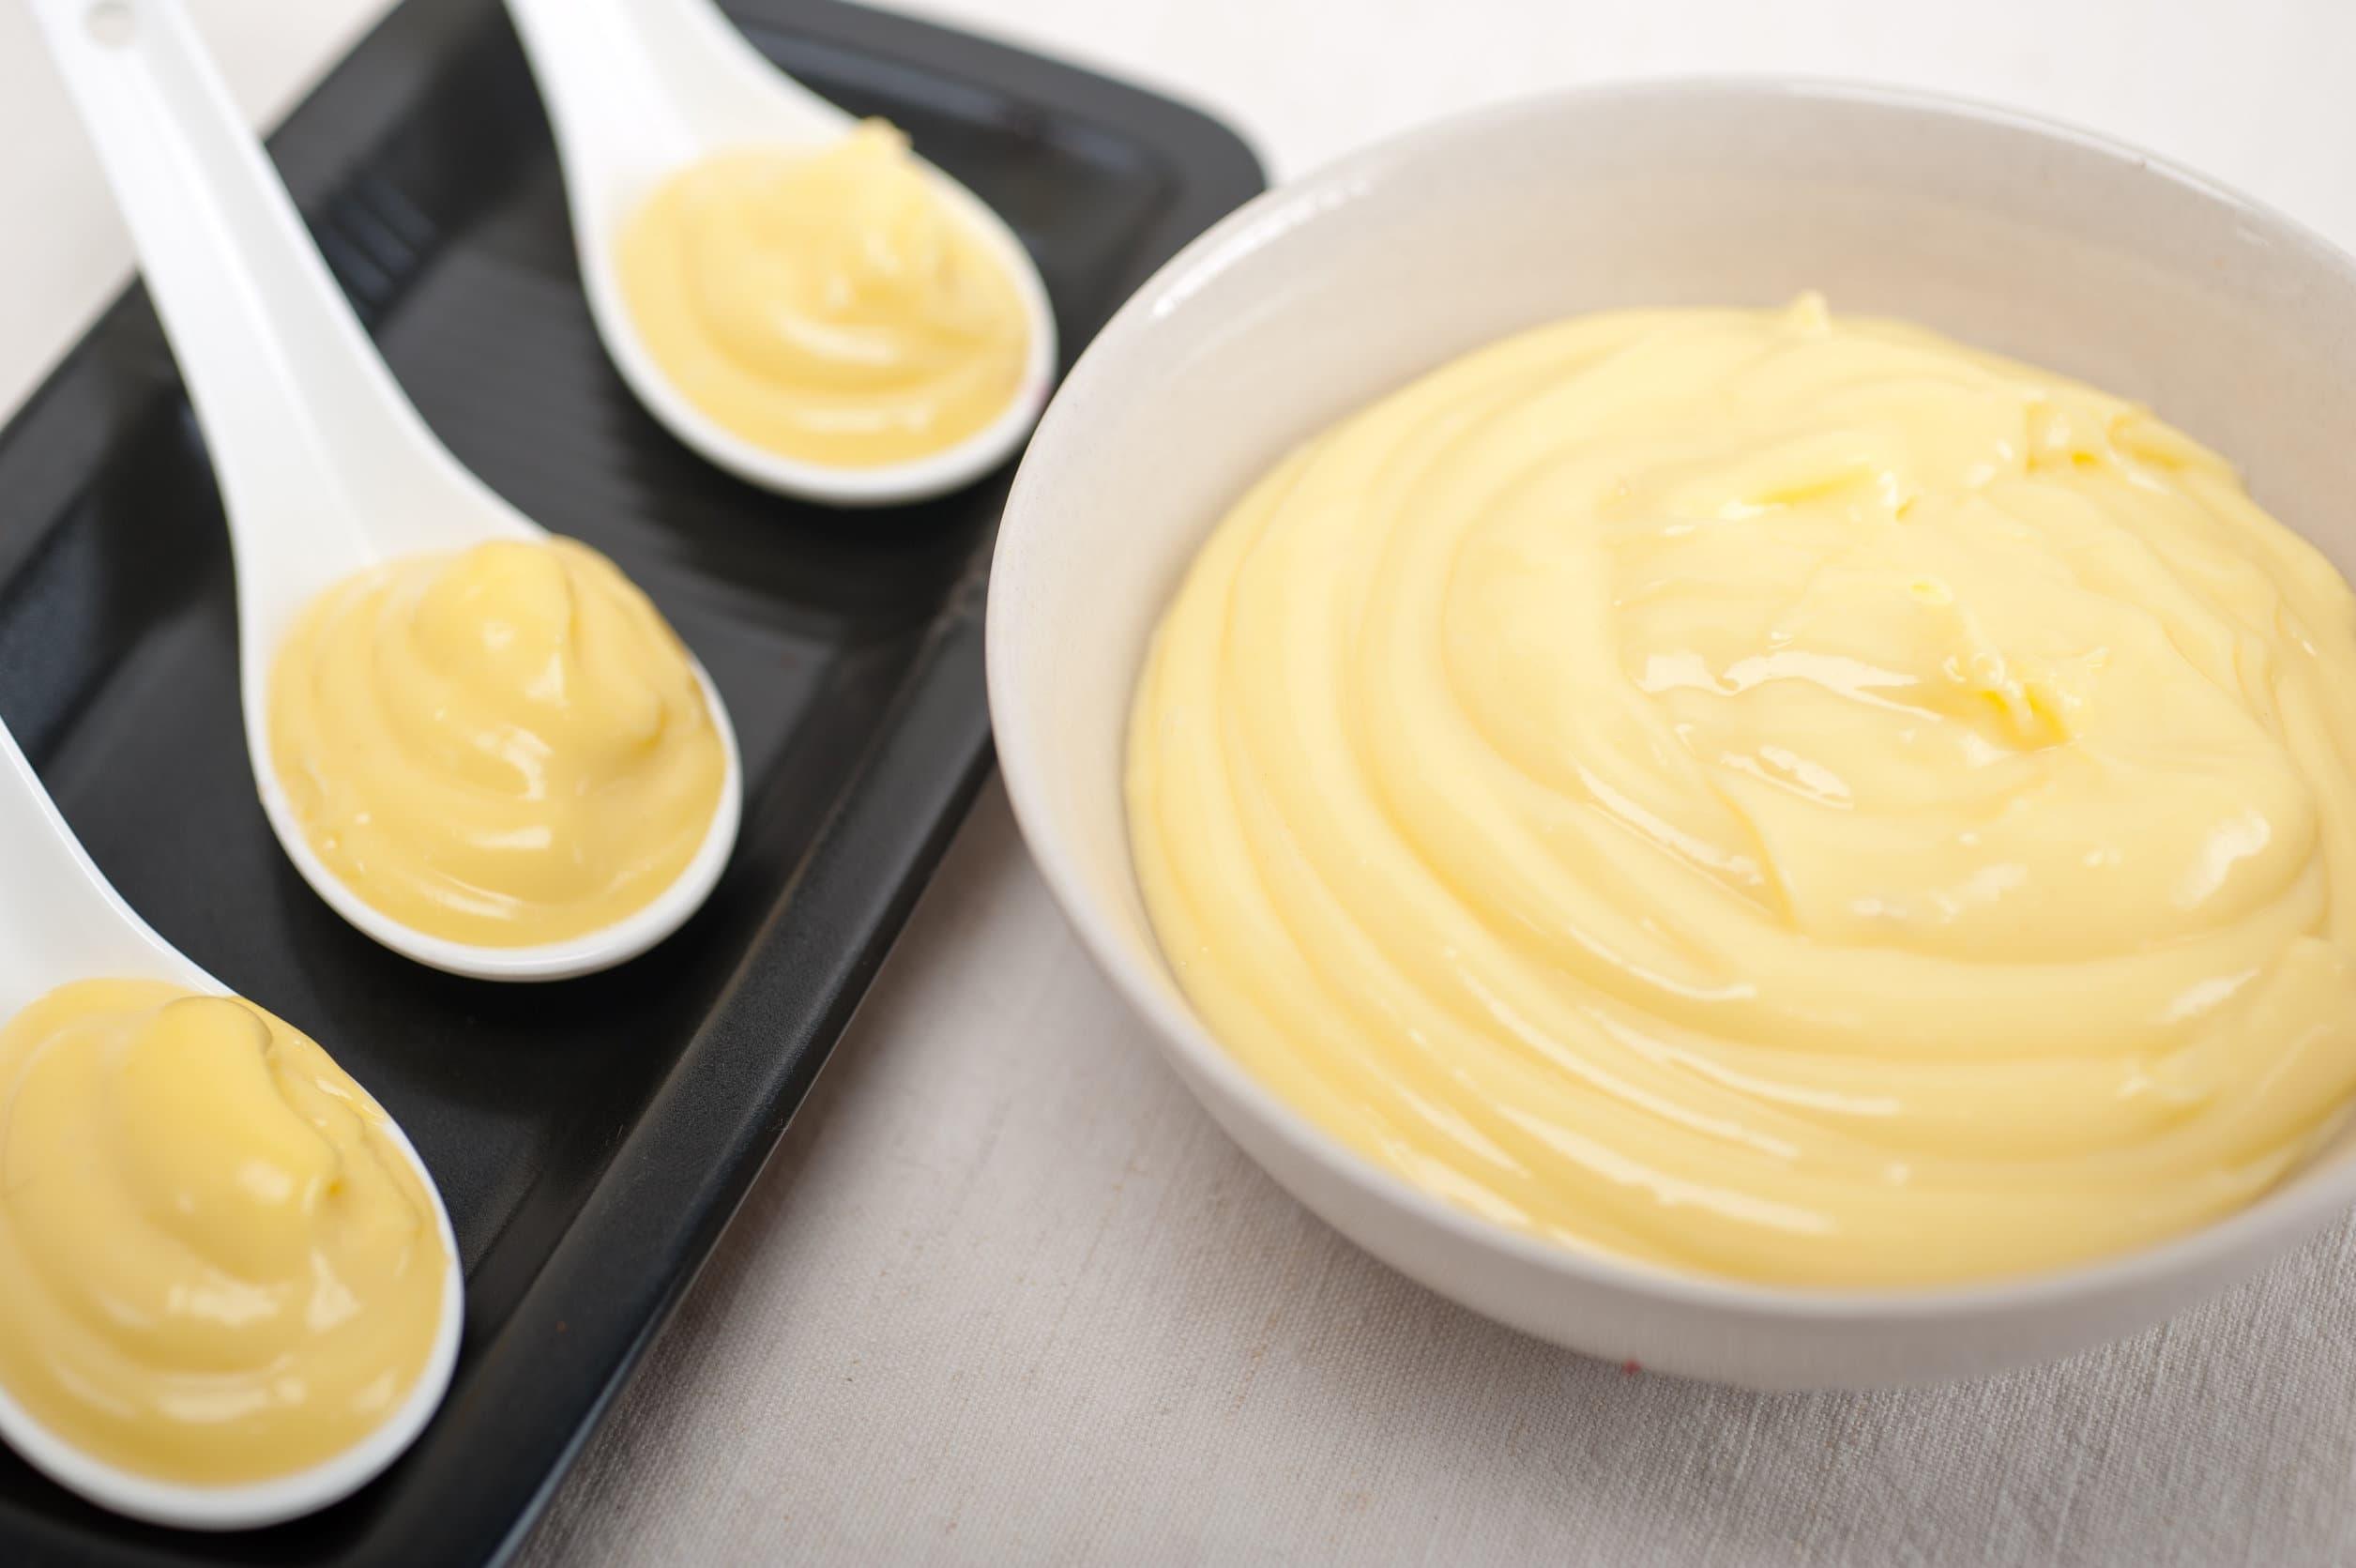 Crema pasticcera senza uova: la ricetta facile | Deabyday